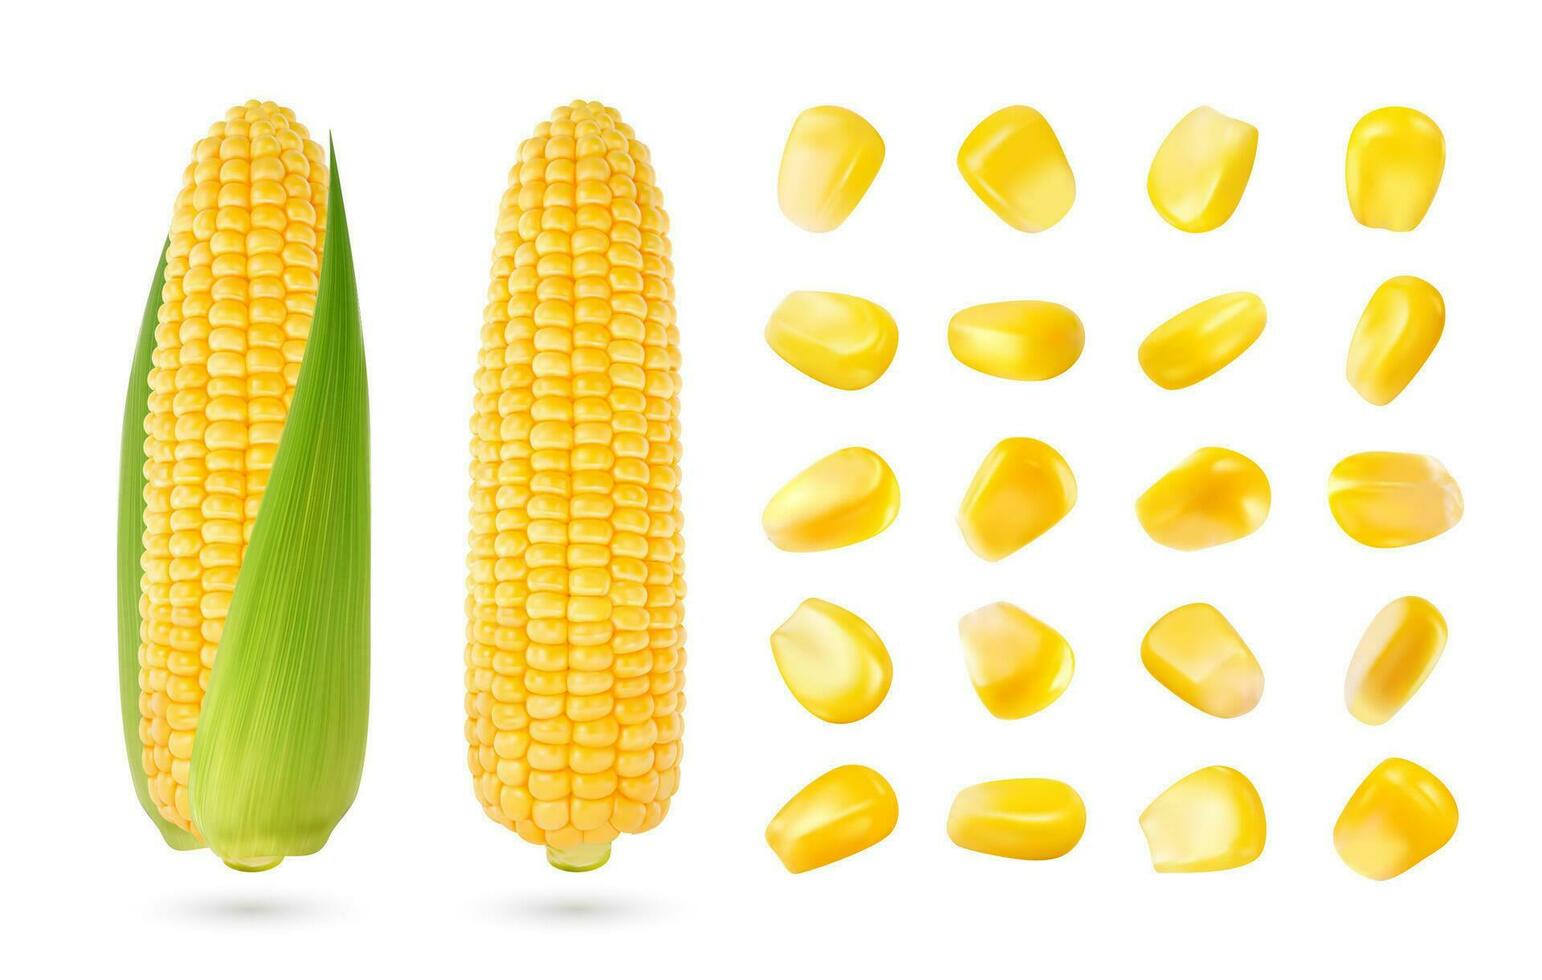 realistisk majs majskolv och spannmål frön isolerat 3d uppsättning vektor